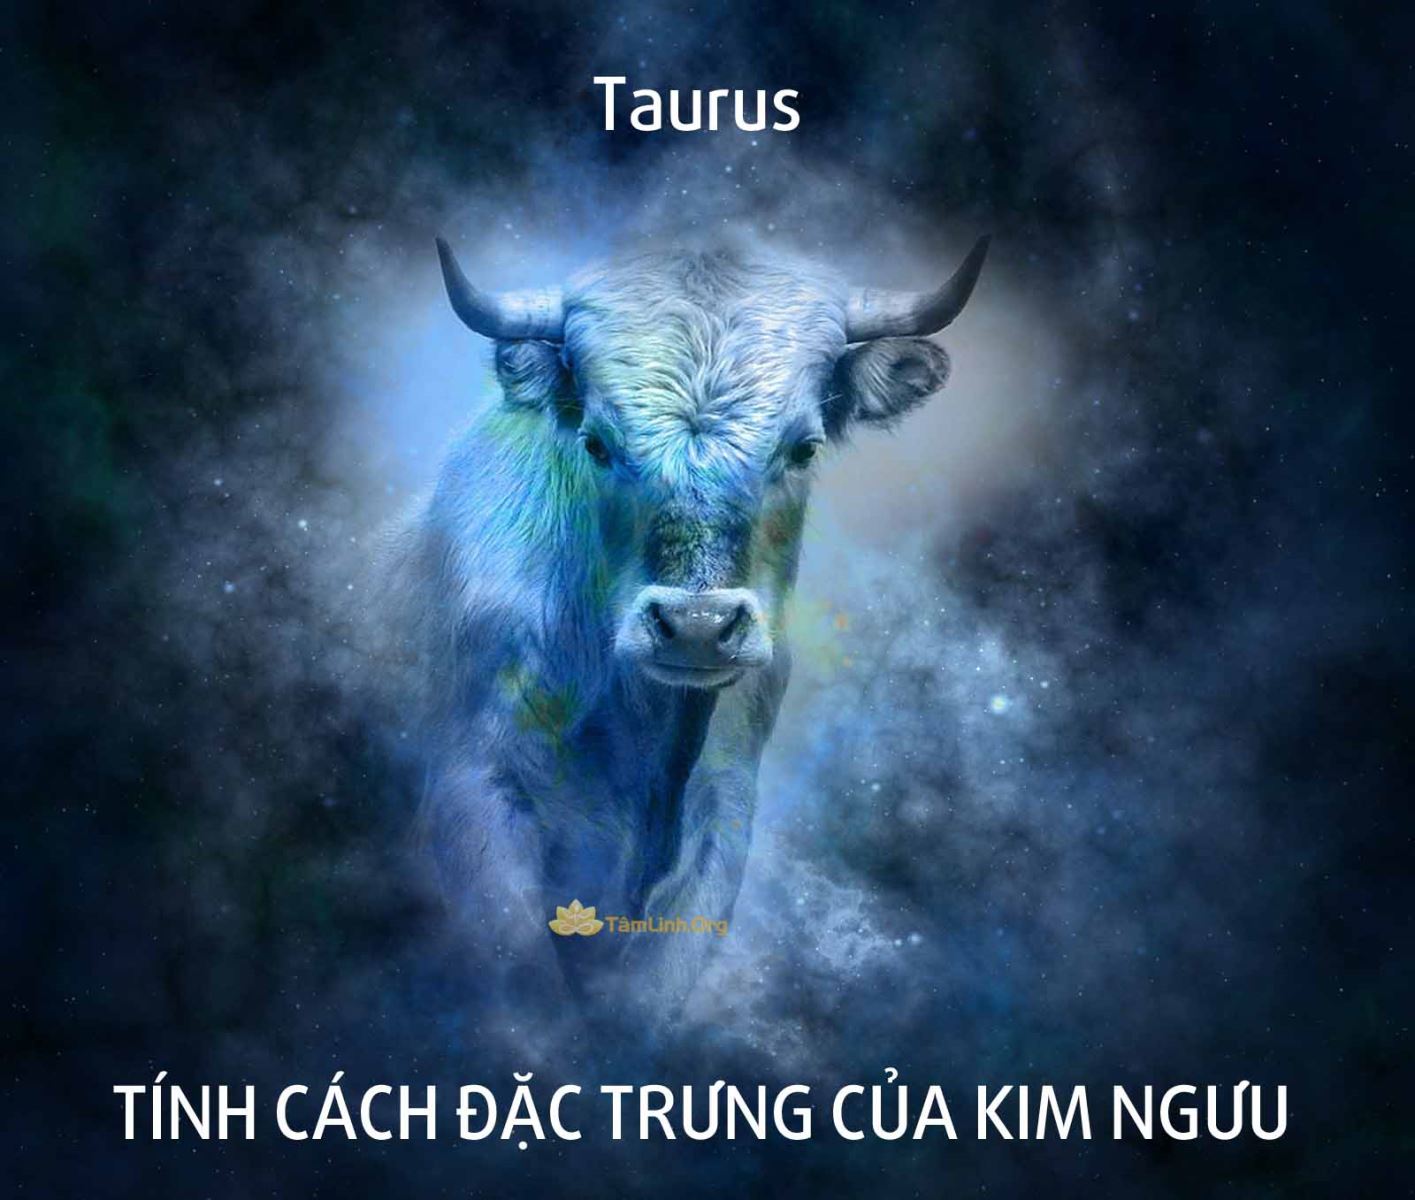 Tính cách đặc trưng của Kim Ngưu | Taurus | Tính cách, tình yêu ...